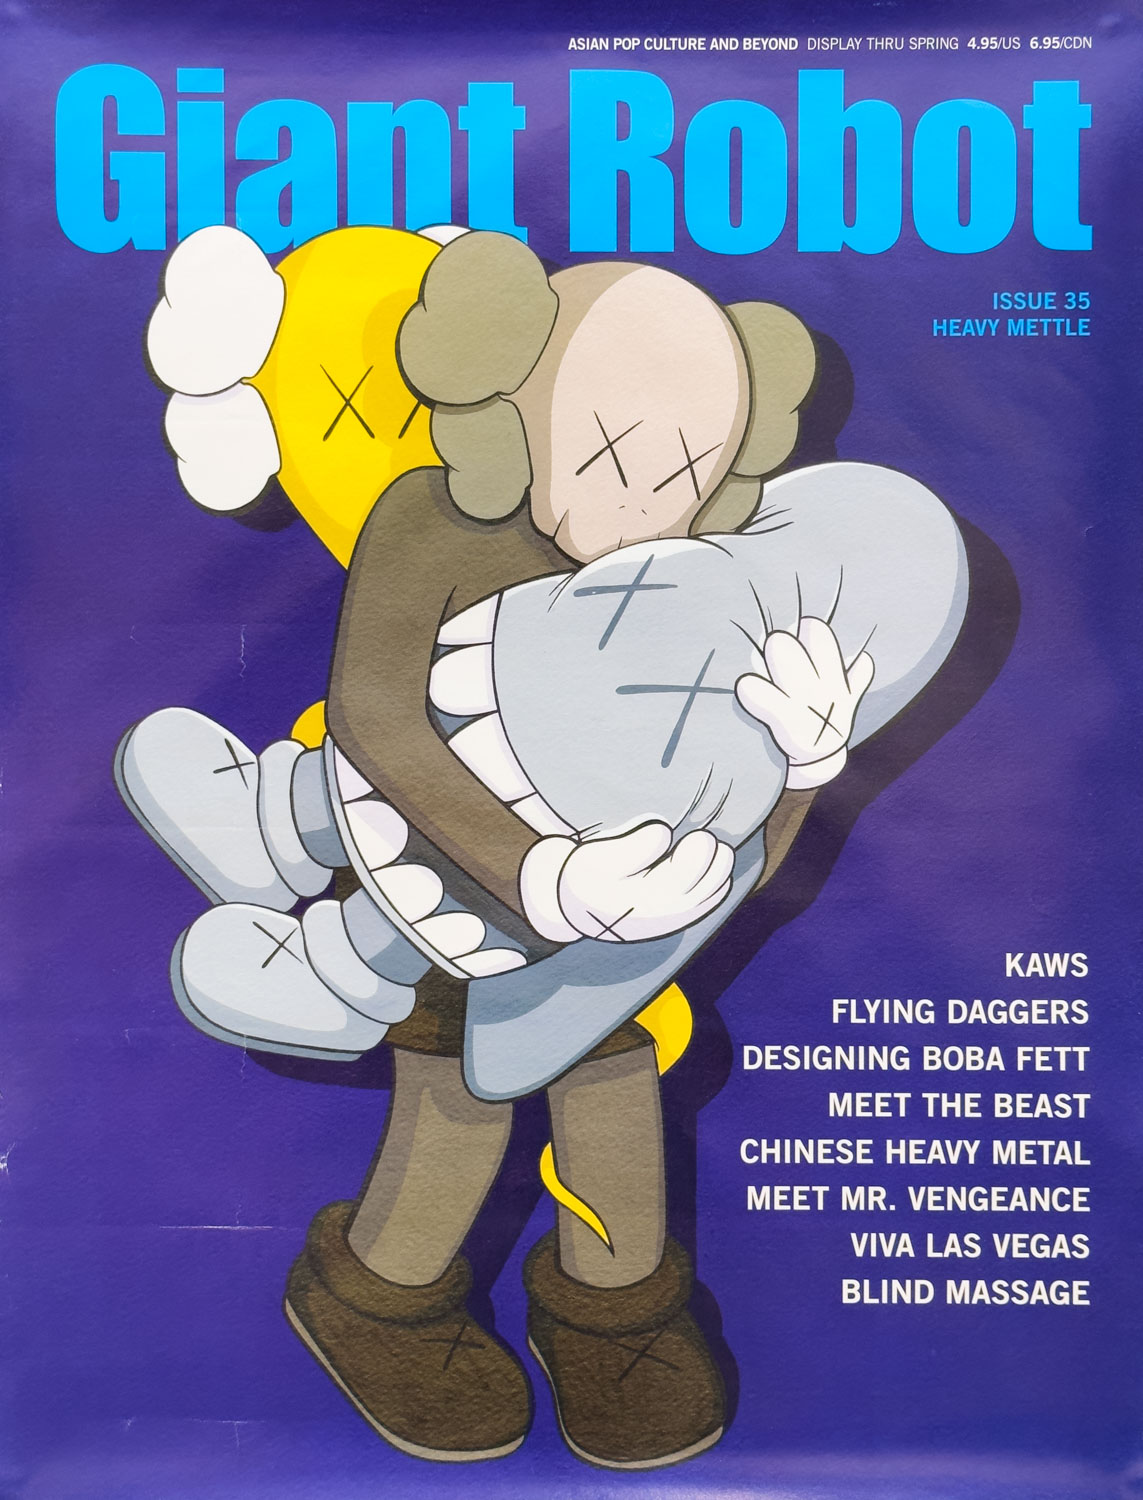 「Kaws 2004 Giant Robot Magazine Poster / KAWS」メイン画像